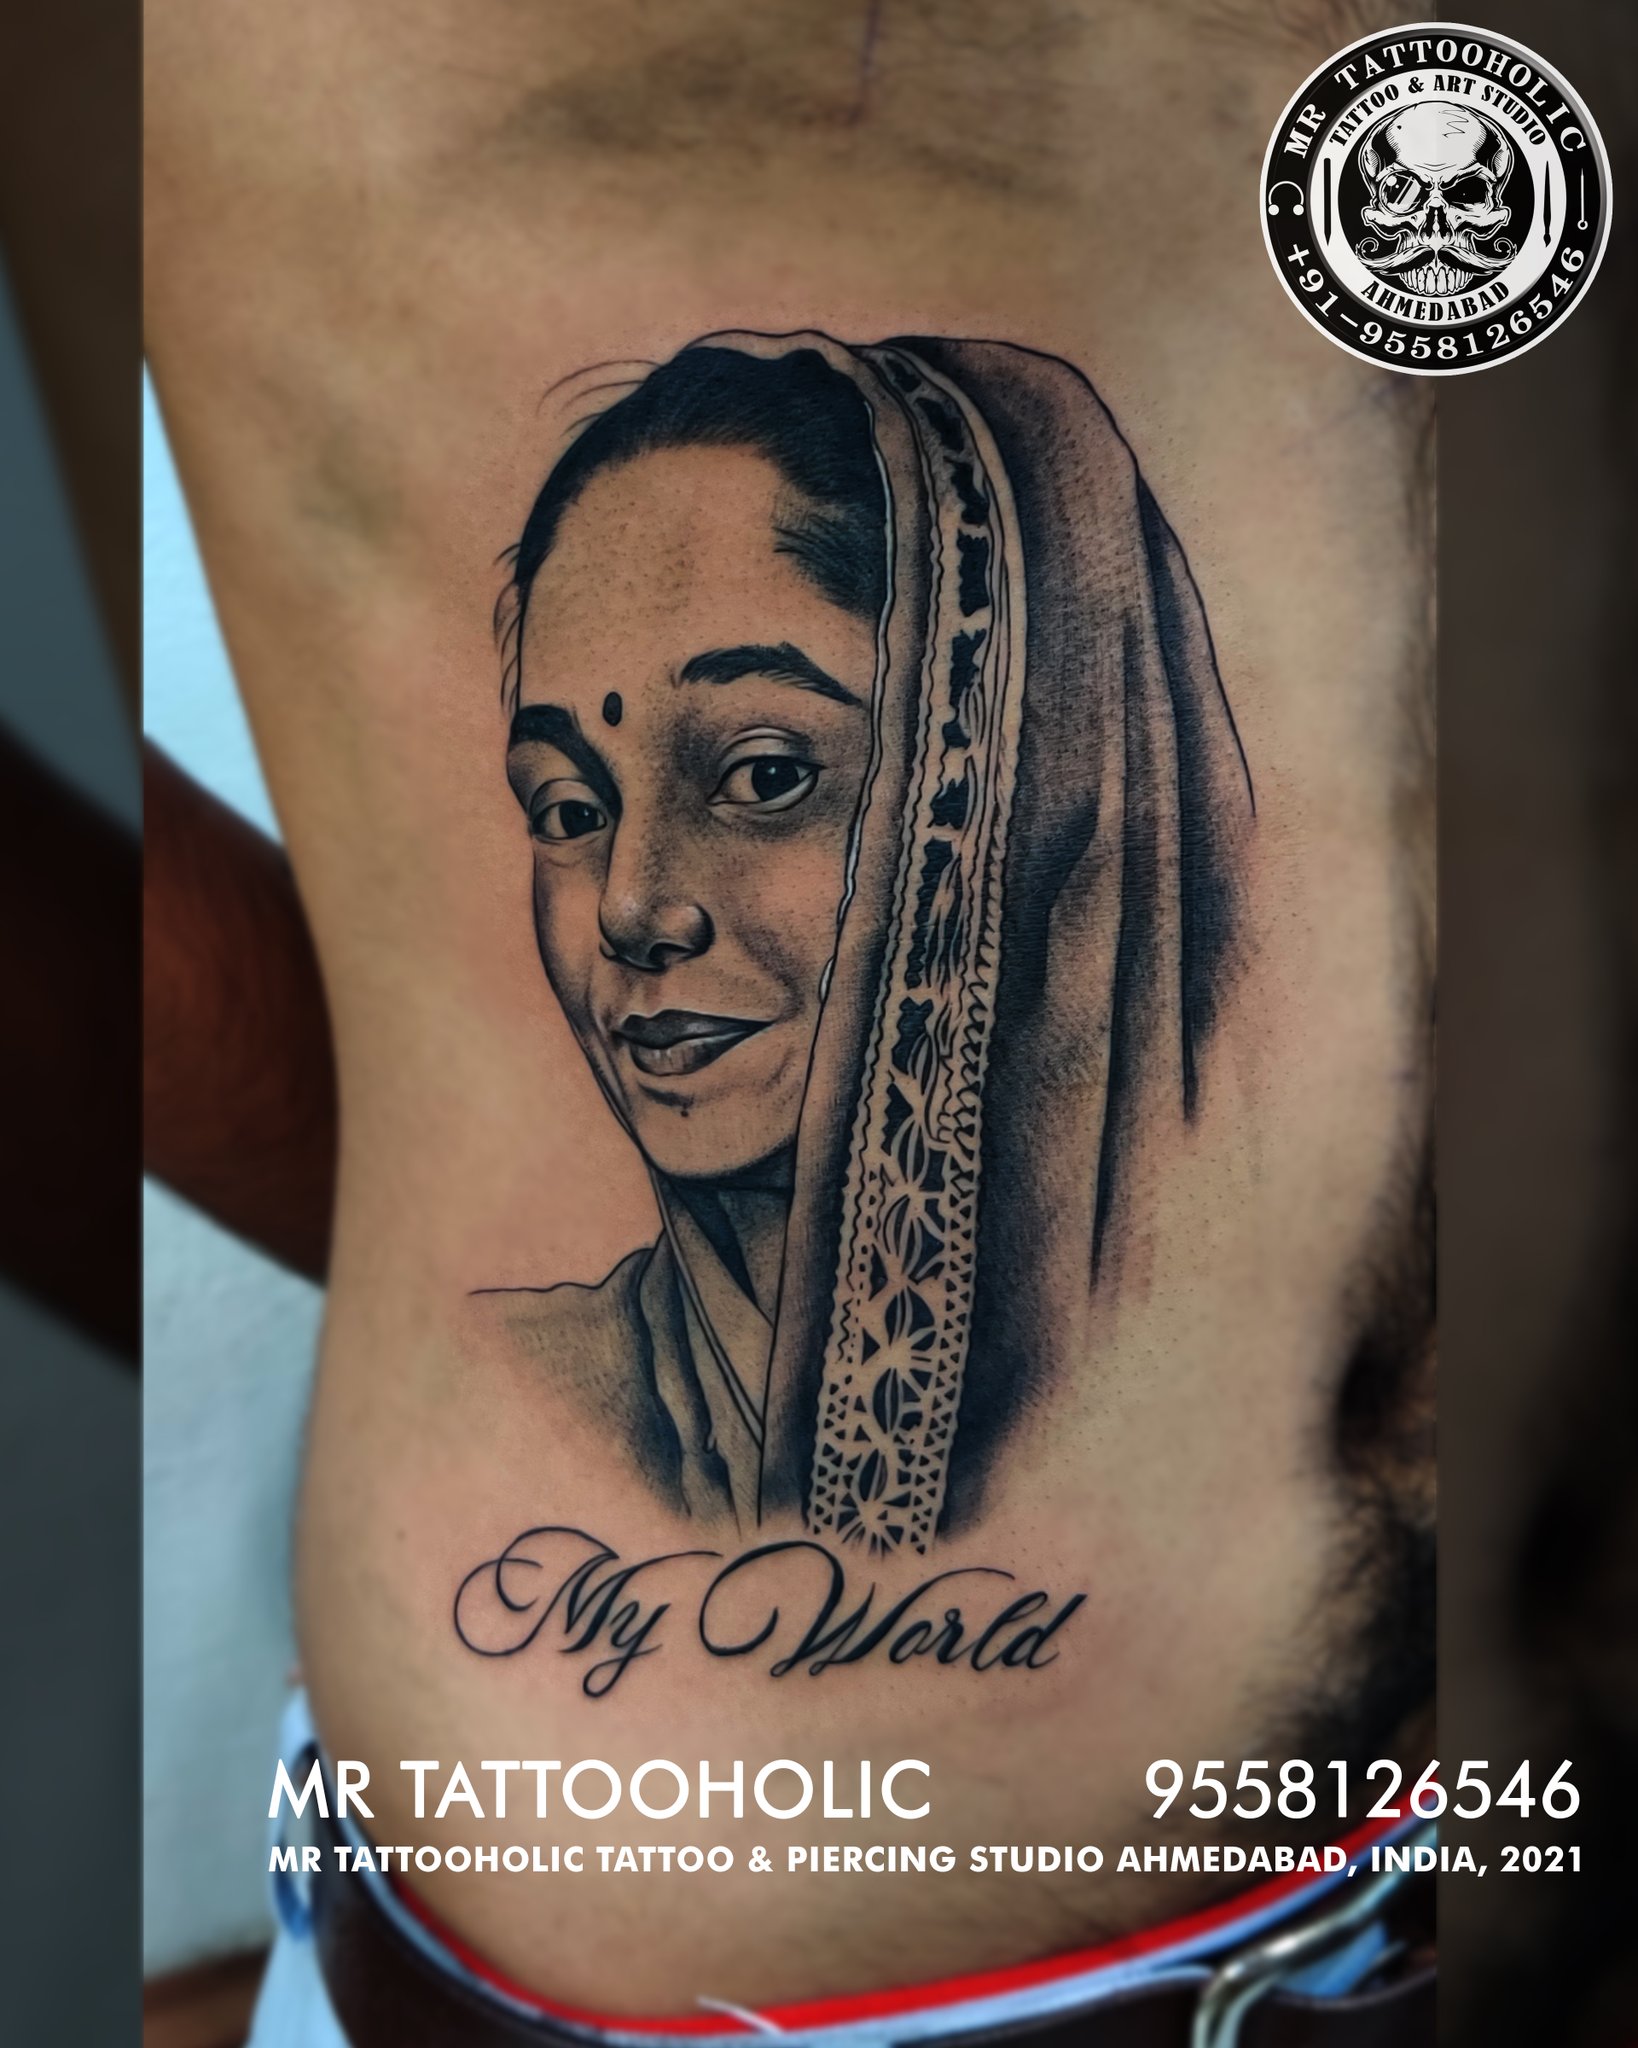 Mr Tattooholic ahmedabad (@tattooholic_mr) / Twitter